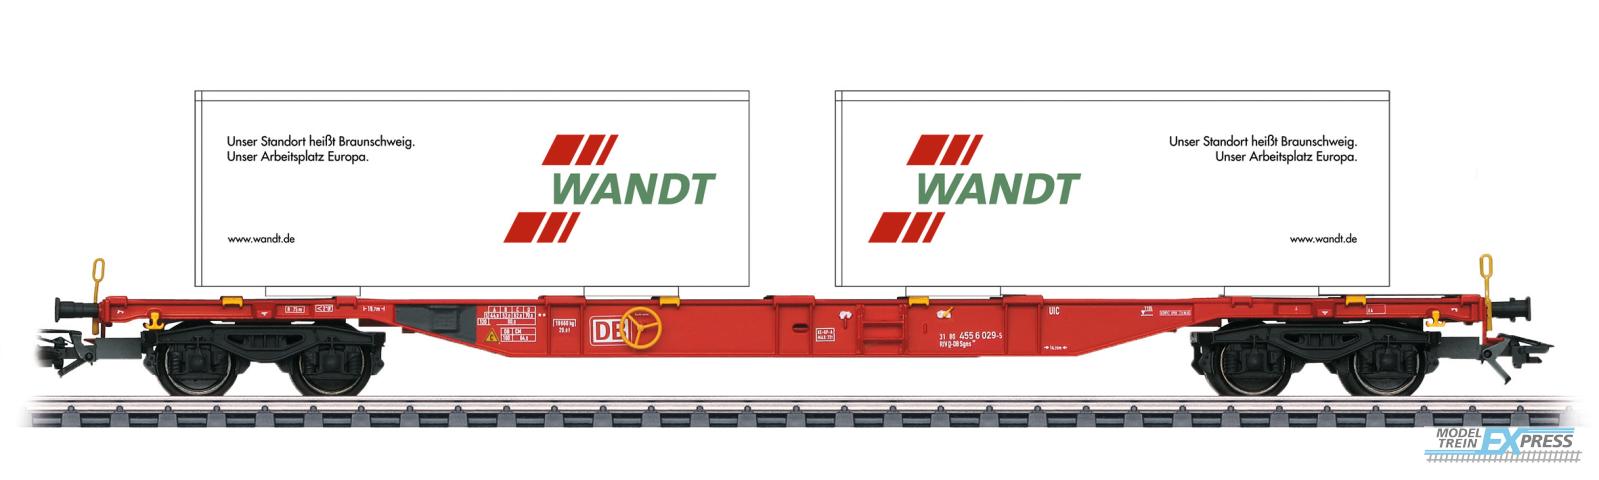 Wilde13 94491 Marklin Containertragwagen Sgns691, DBAG, Ep.VI, verkehrsrot, 'Wandt'